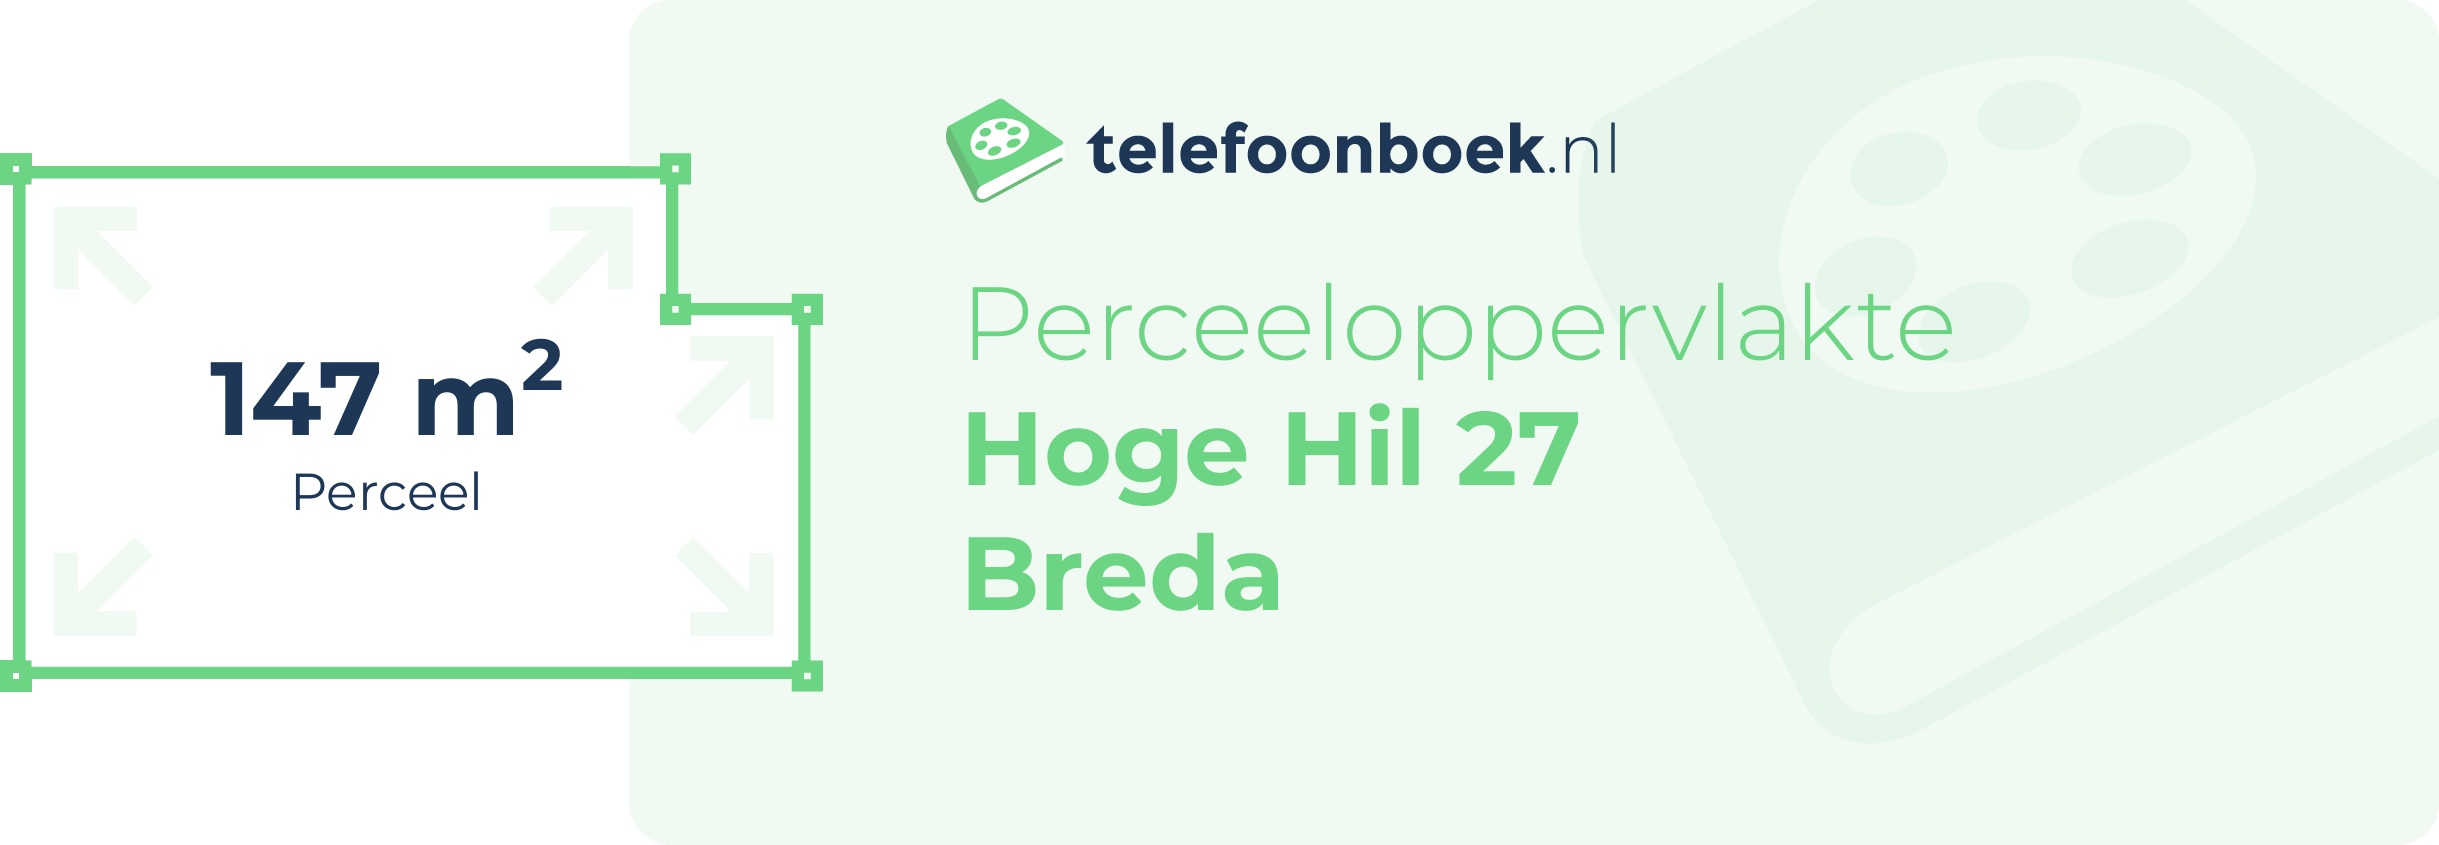 Perceeloppervlakte Hoge Hil 27 Breda